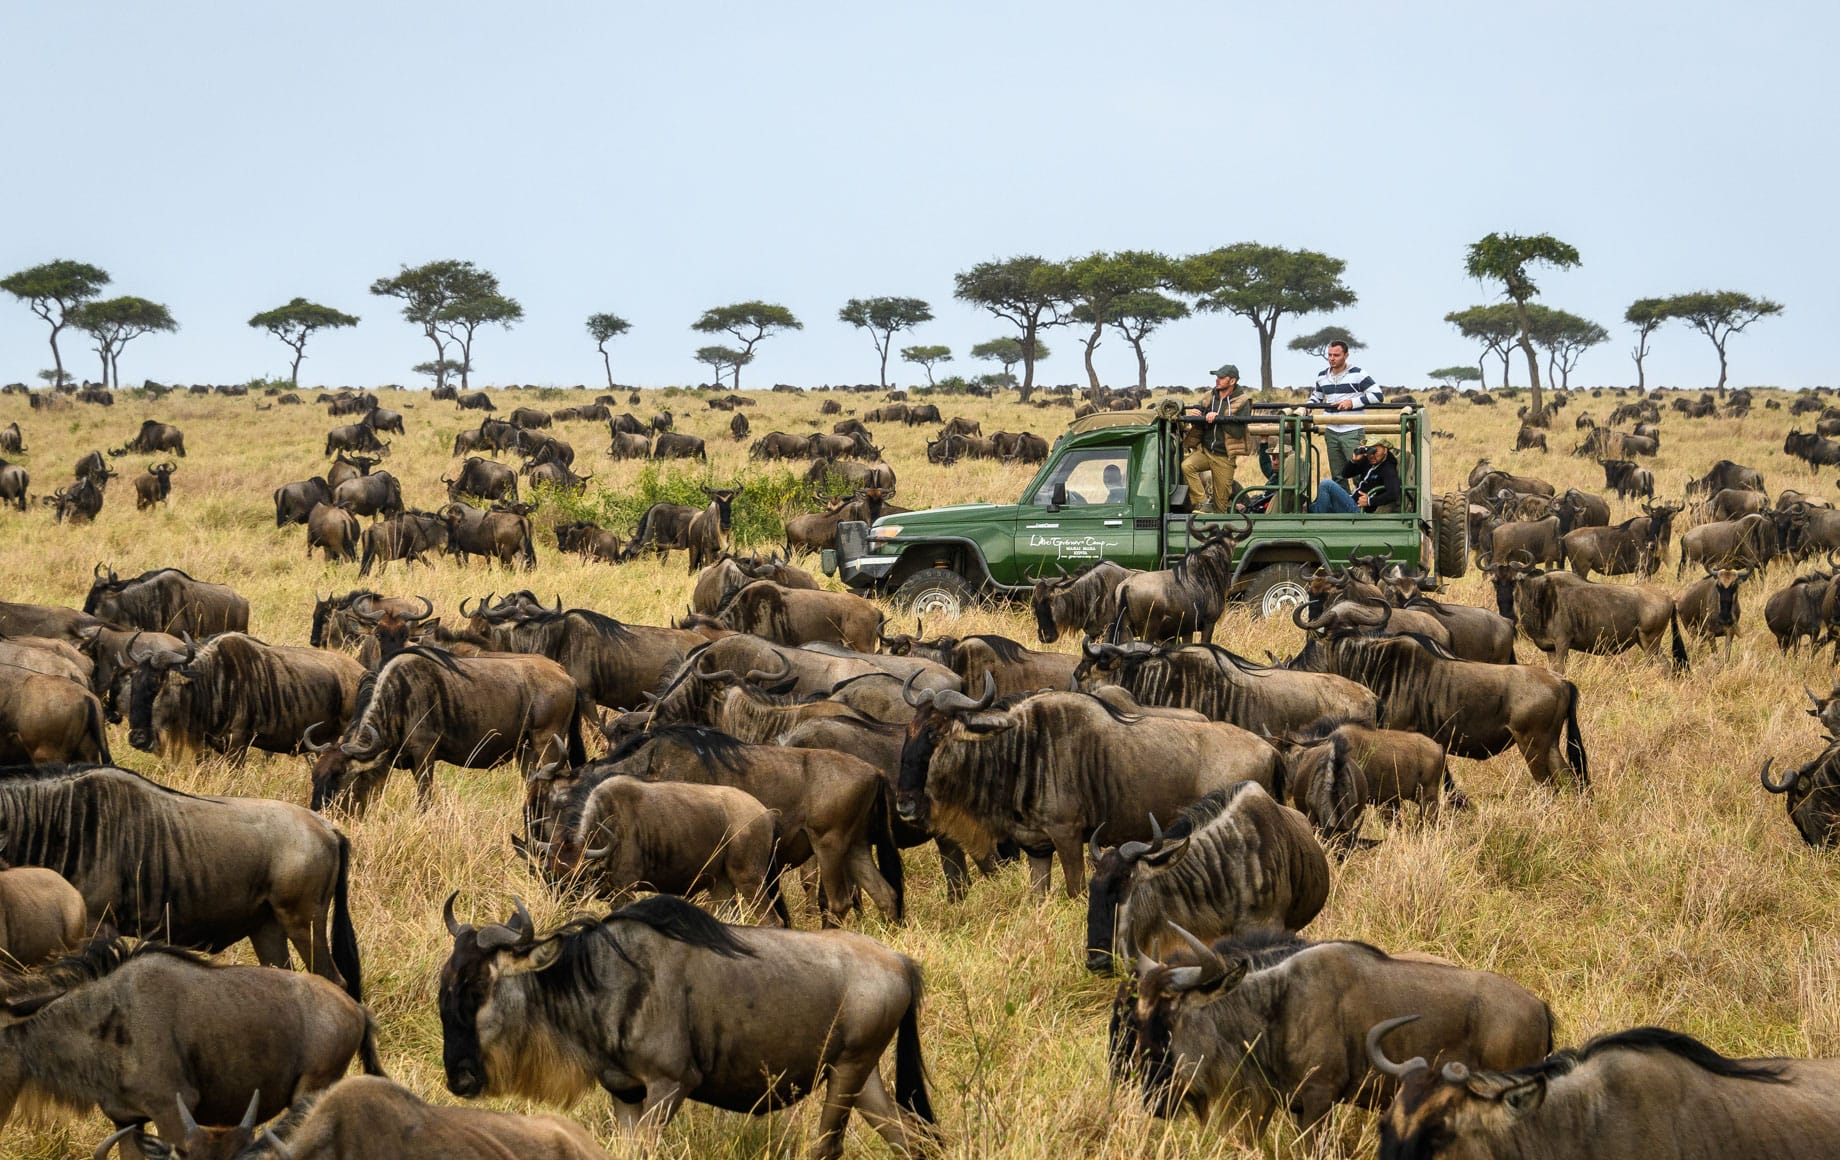 Wildlife in the Maasai Mara